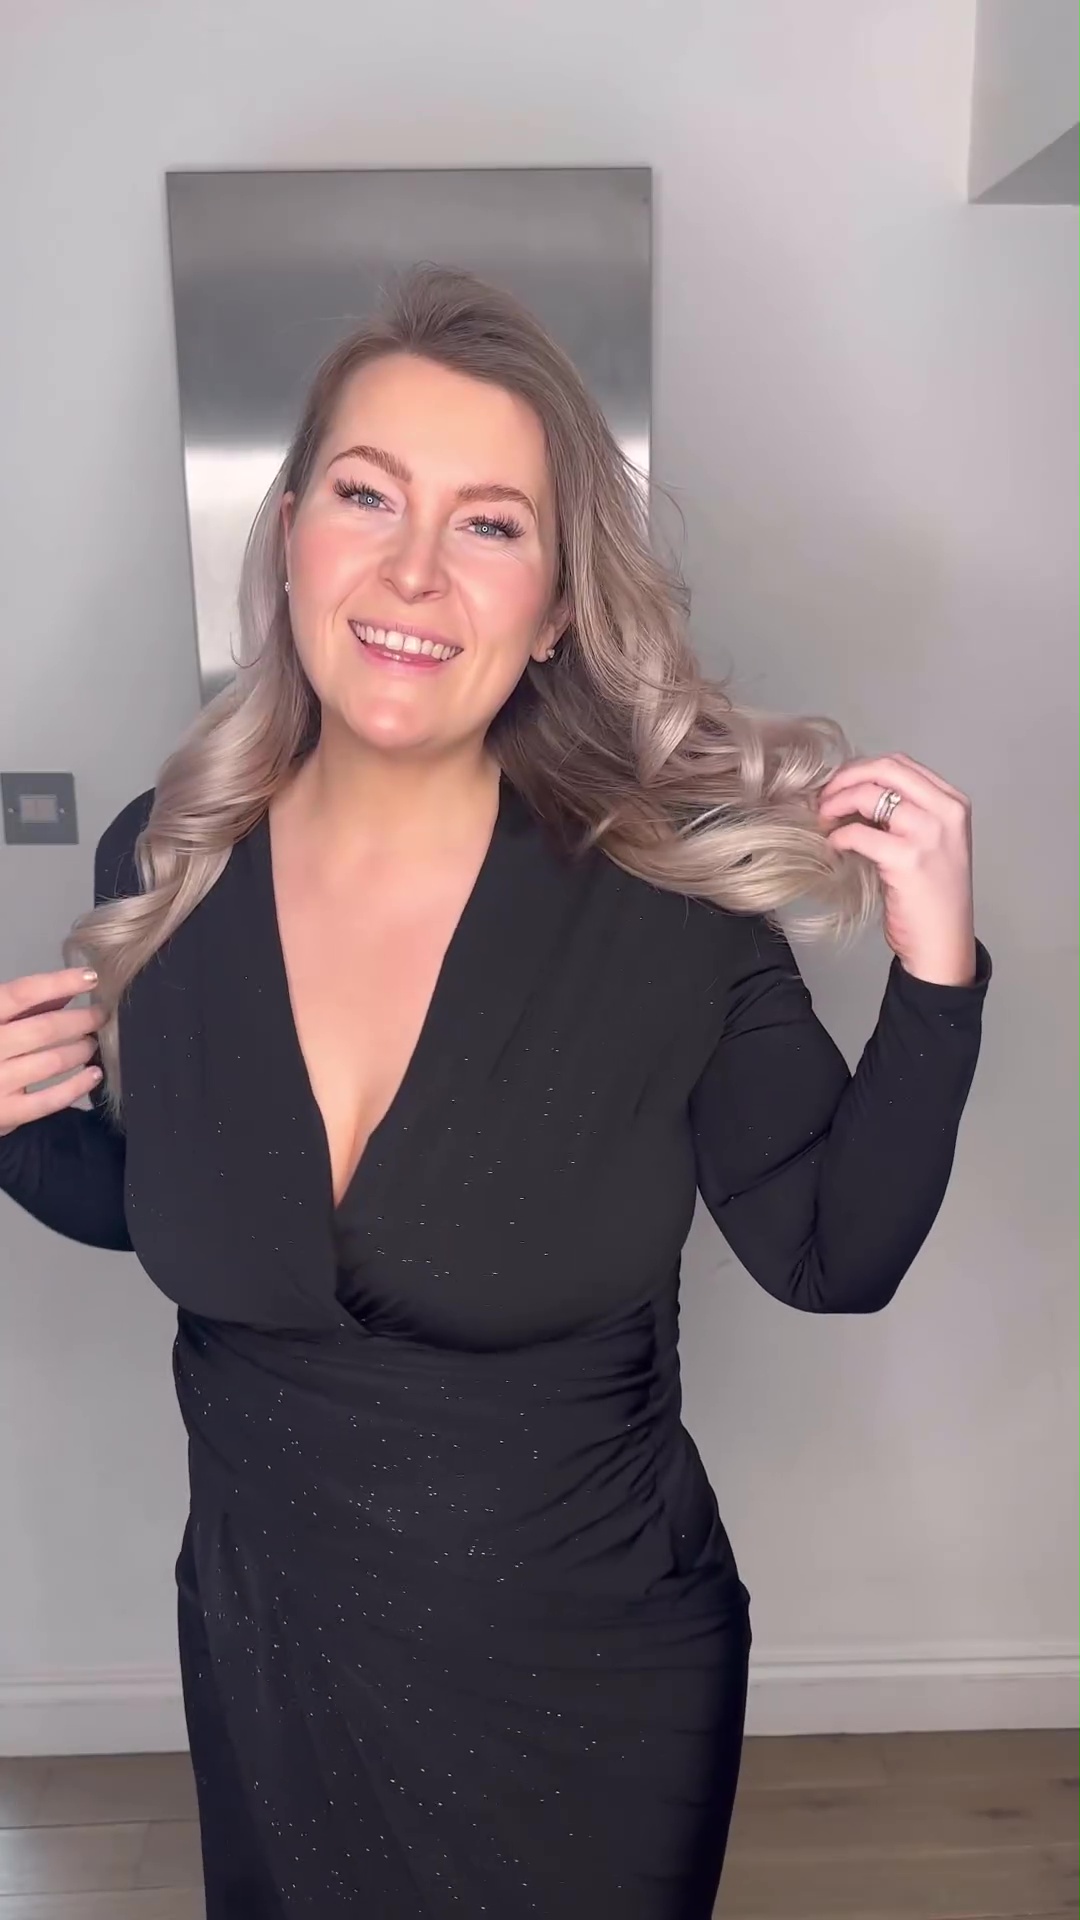 Für nur 3 £ verwandelte sie ein schlichtes schwarzes Kleid in ein festliches Kleid